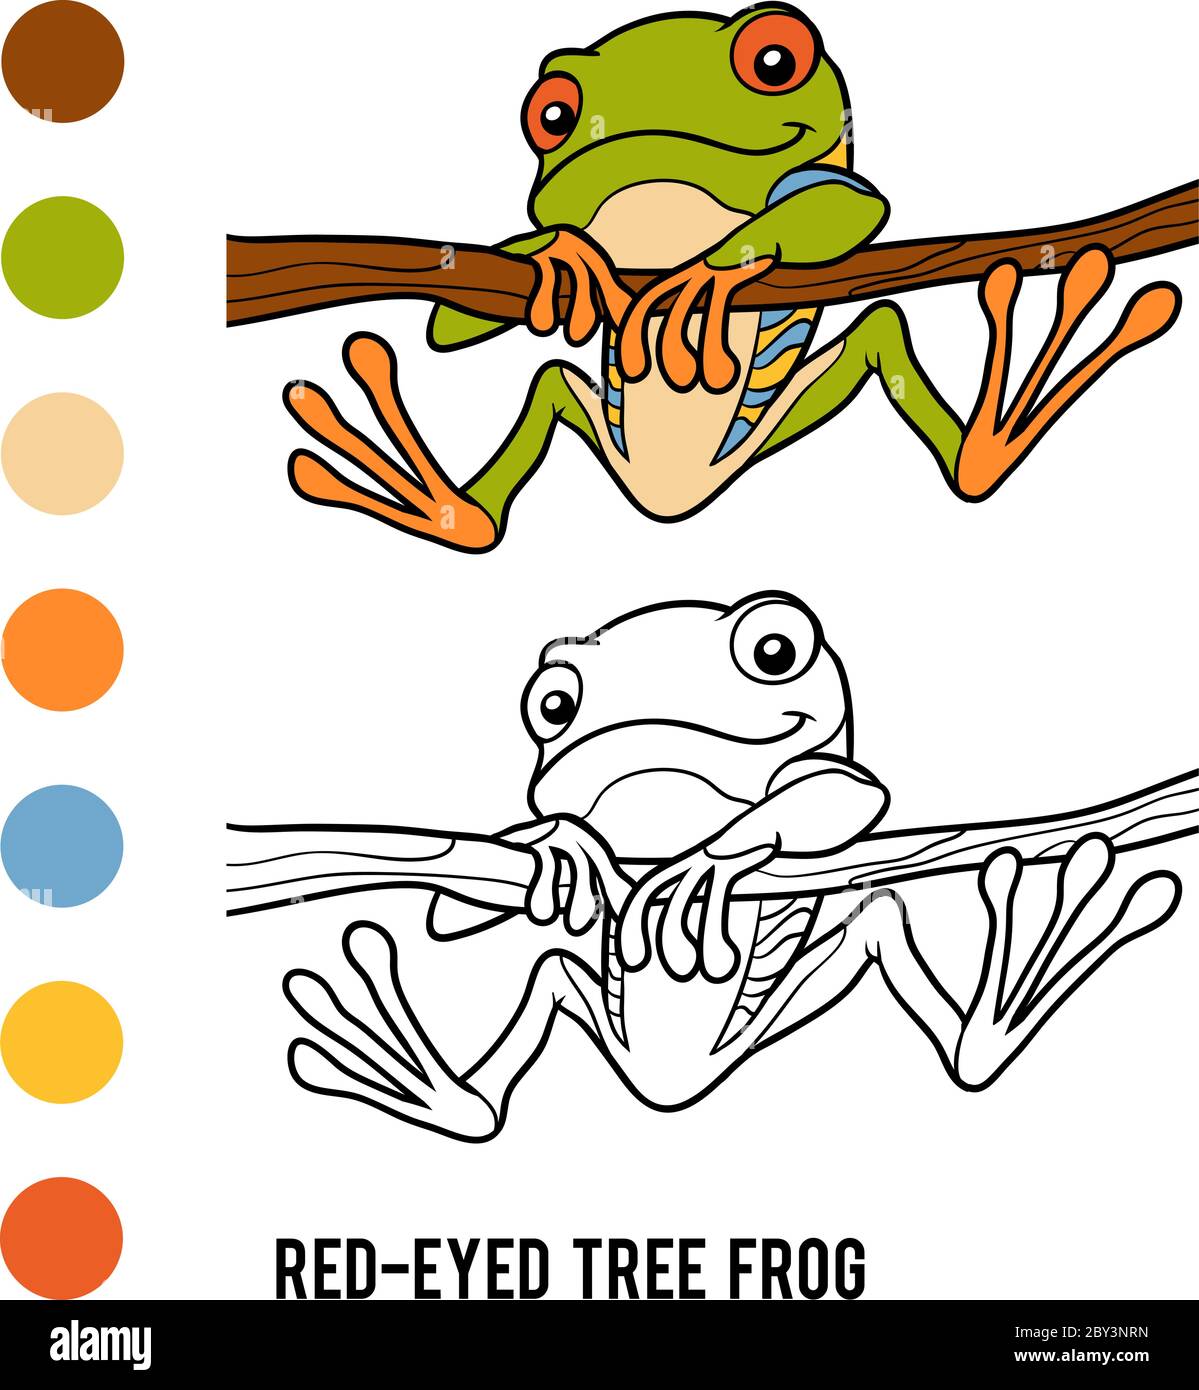 Livre de coloriage pour enfants, grenouille d'arbre à yeux rouges Illustration de Vecteur